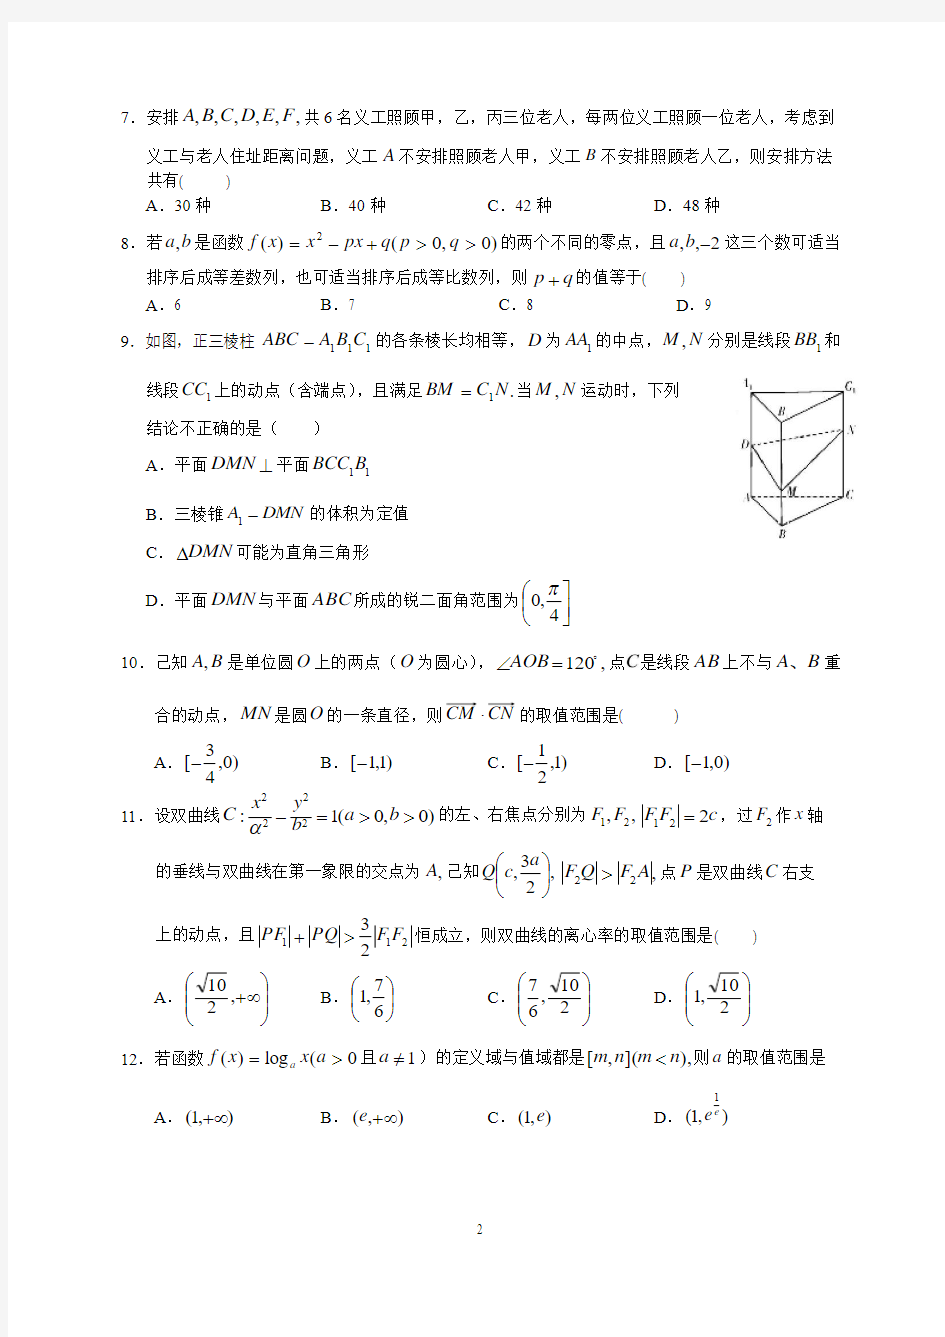 广东省实验中学2020届高三年级第二次阶段考试(理数)